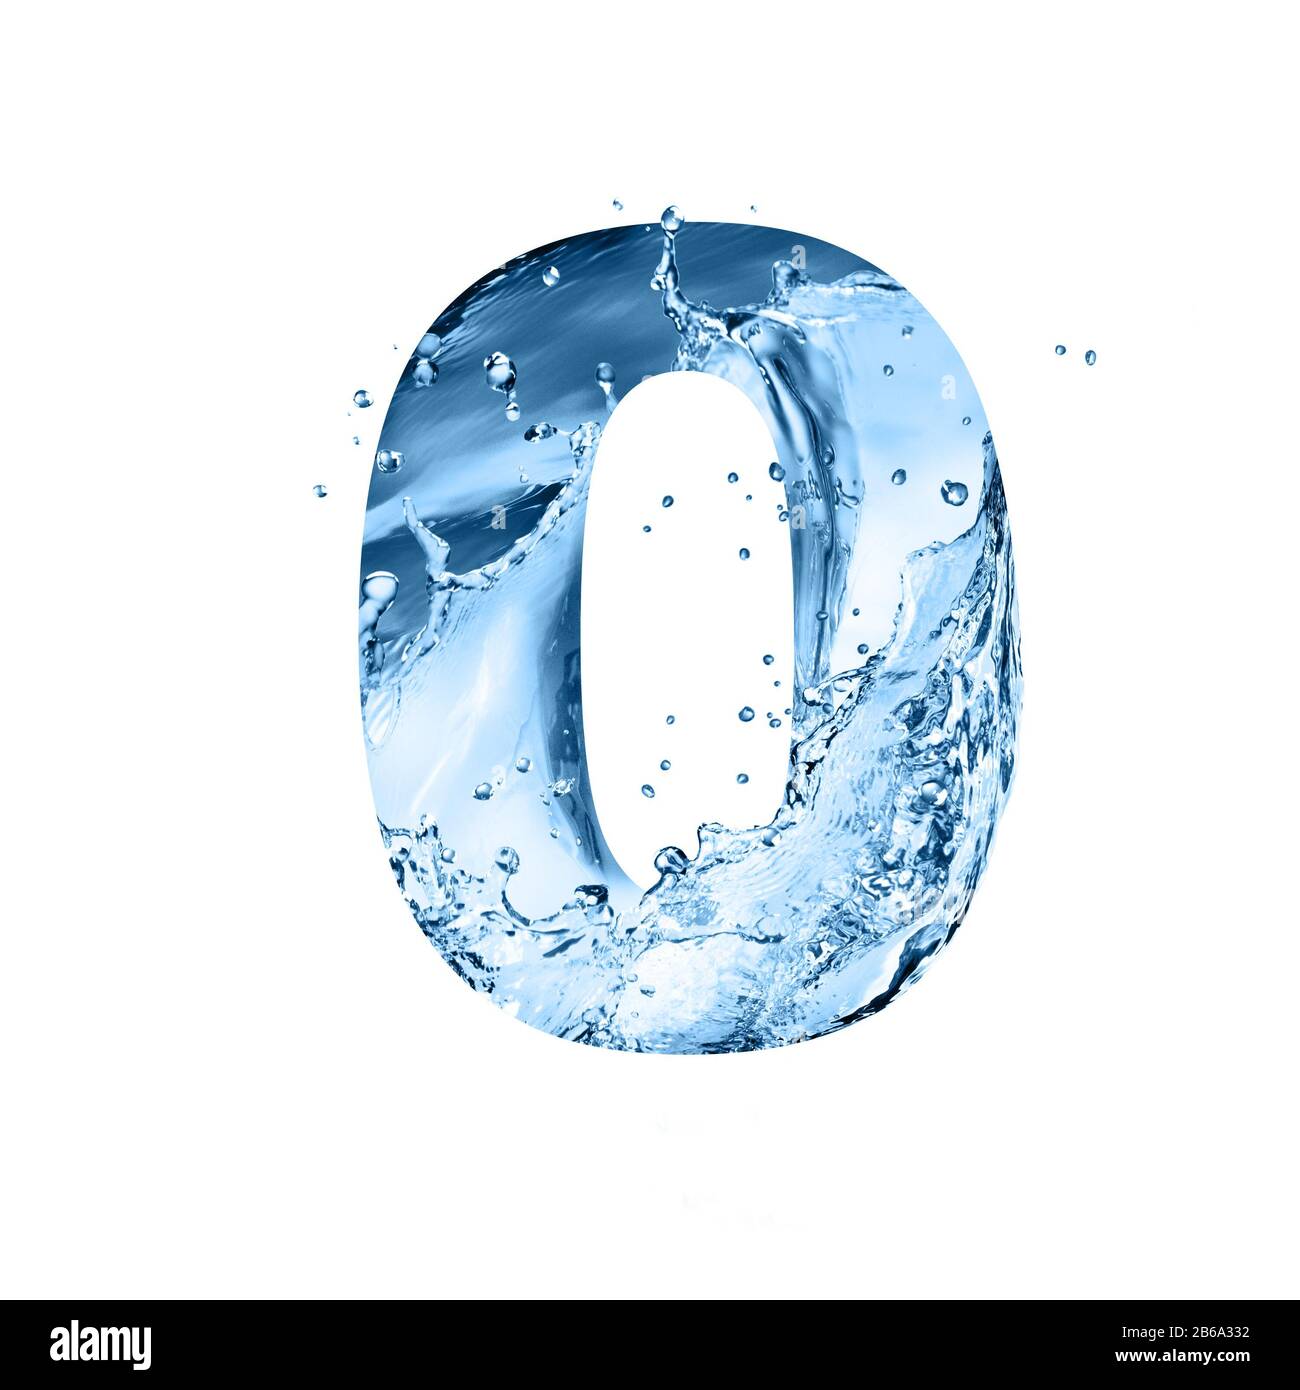 carattere stilizzato, testo fatto di schizzi d'acqua, cifra 0, isolato su sfondo bianco Foto Stock